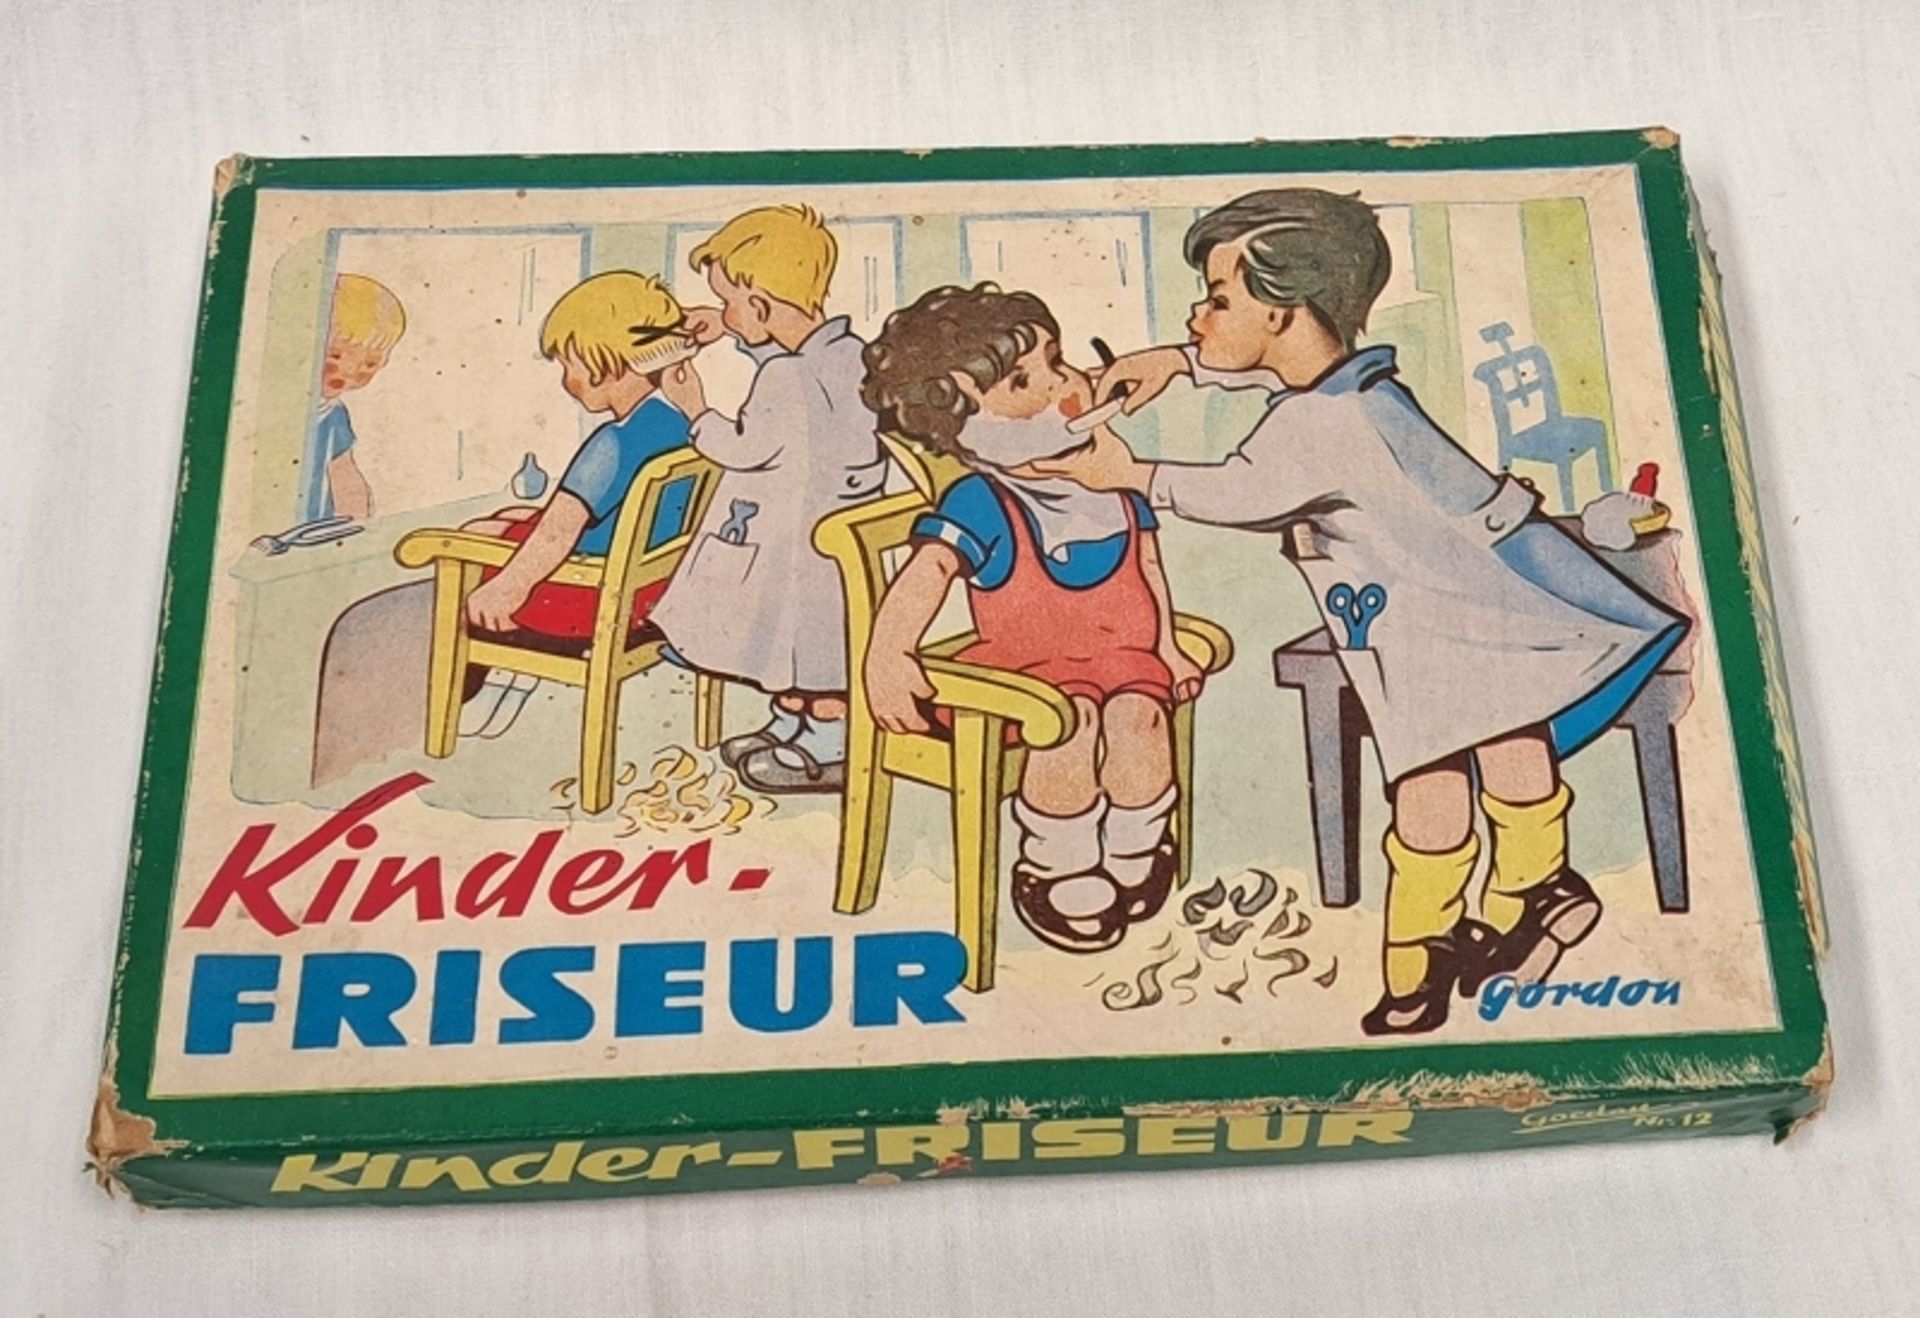 DDR Kinderspiel Kinder-Friseur Gordon - Image 3 of 3